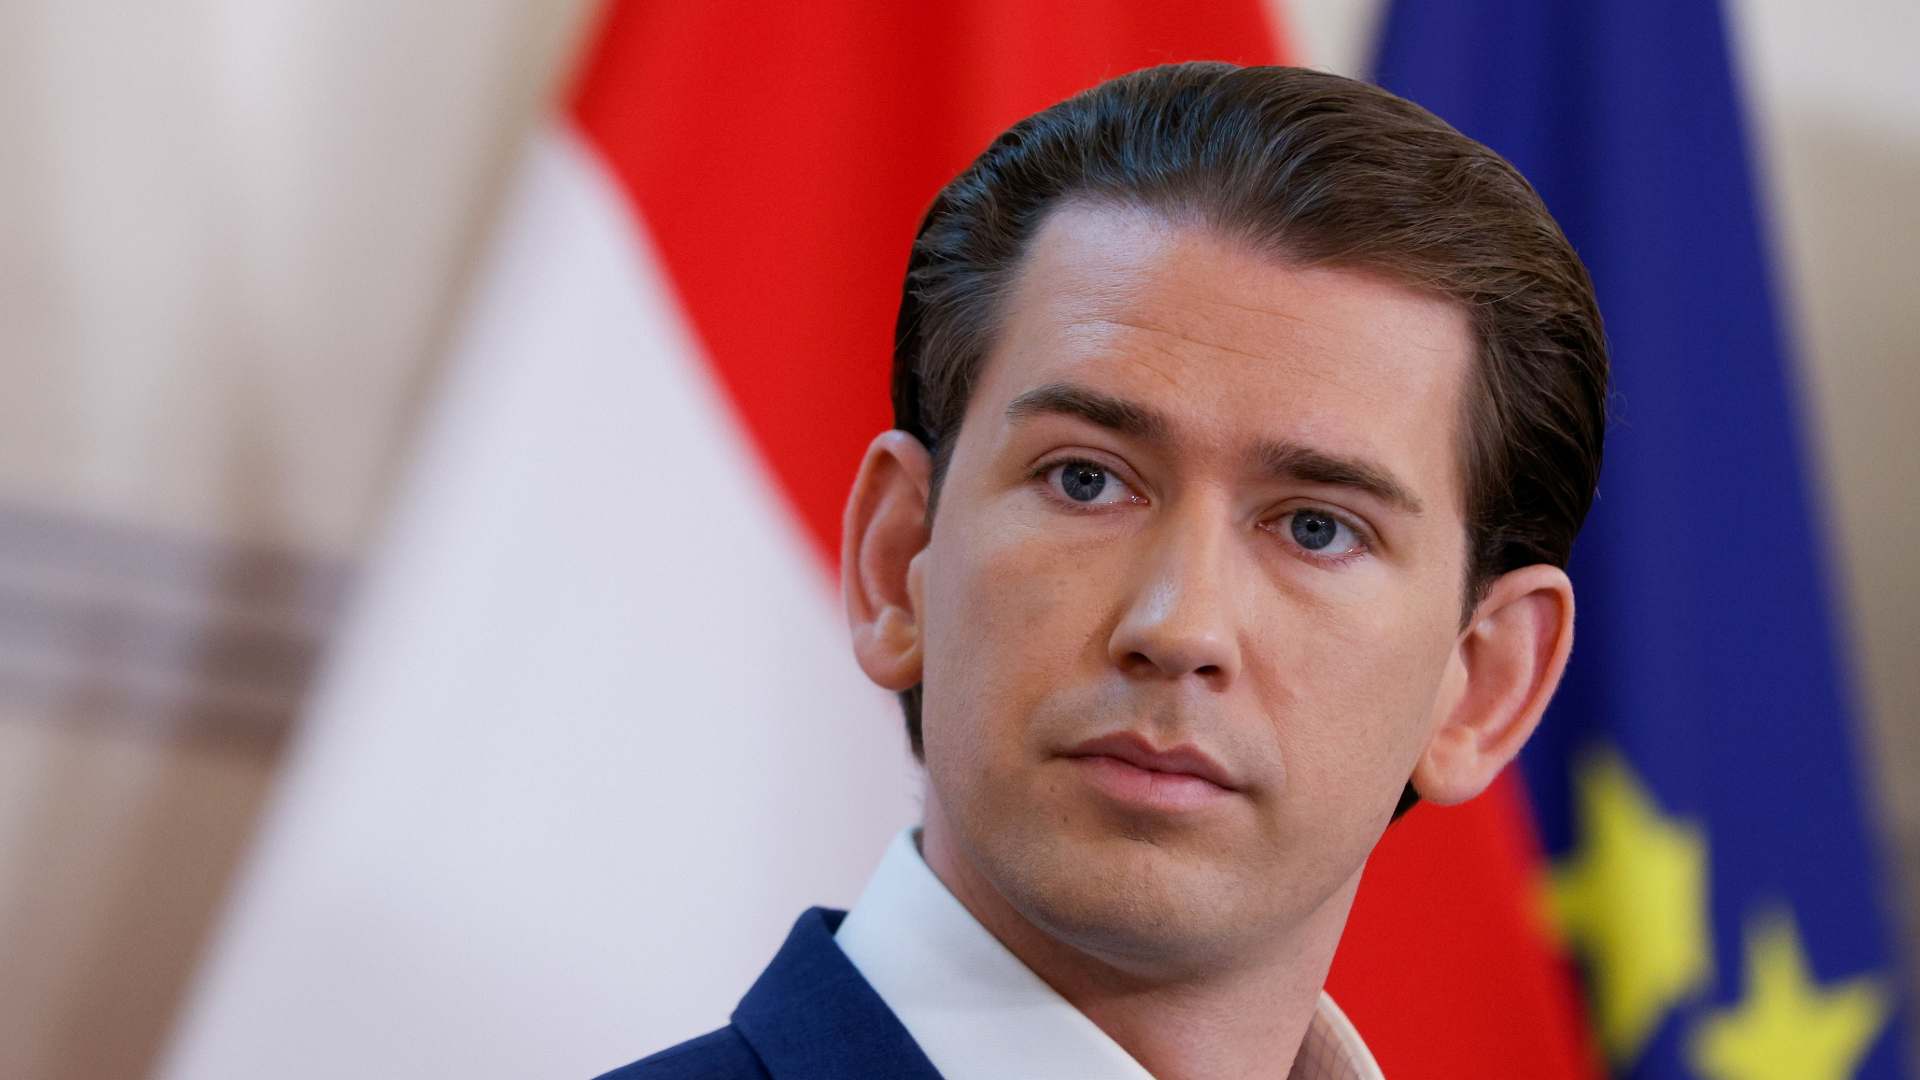 Thủ tướng Áo từ chức vì nghi án tham nhũng